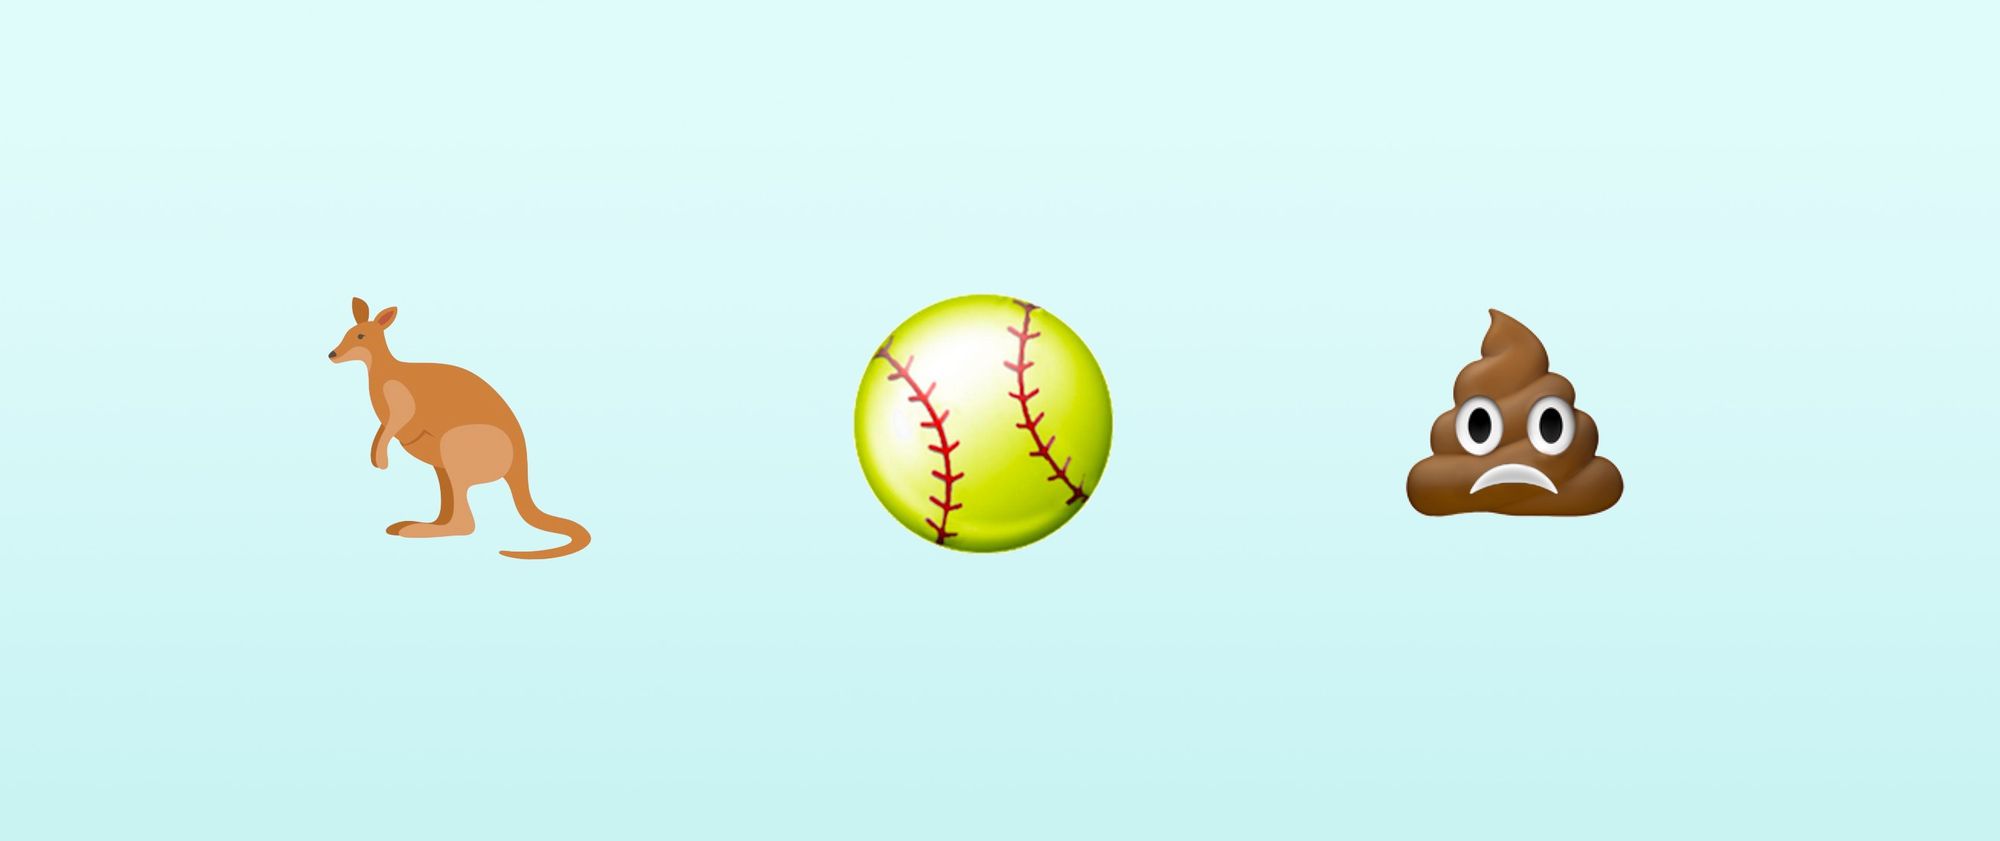 Kangaroo, Softball, Frowning Poo Emojis Possible For 2018